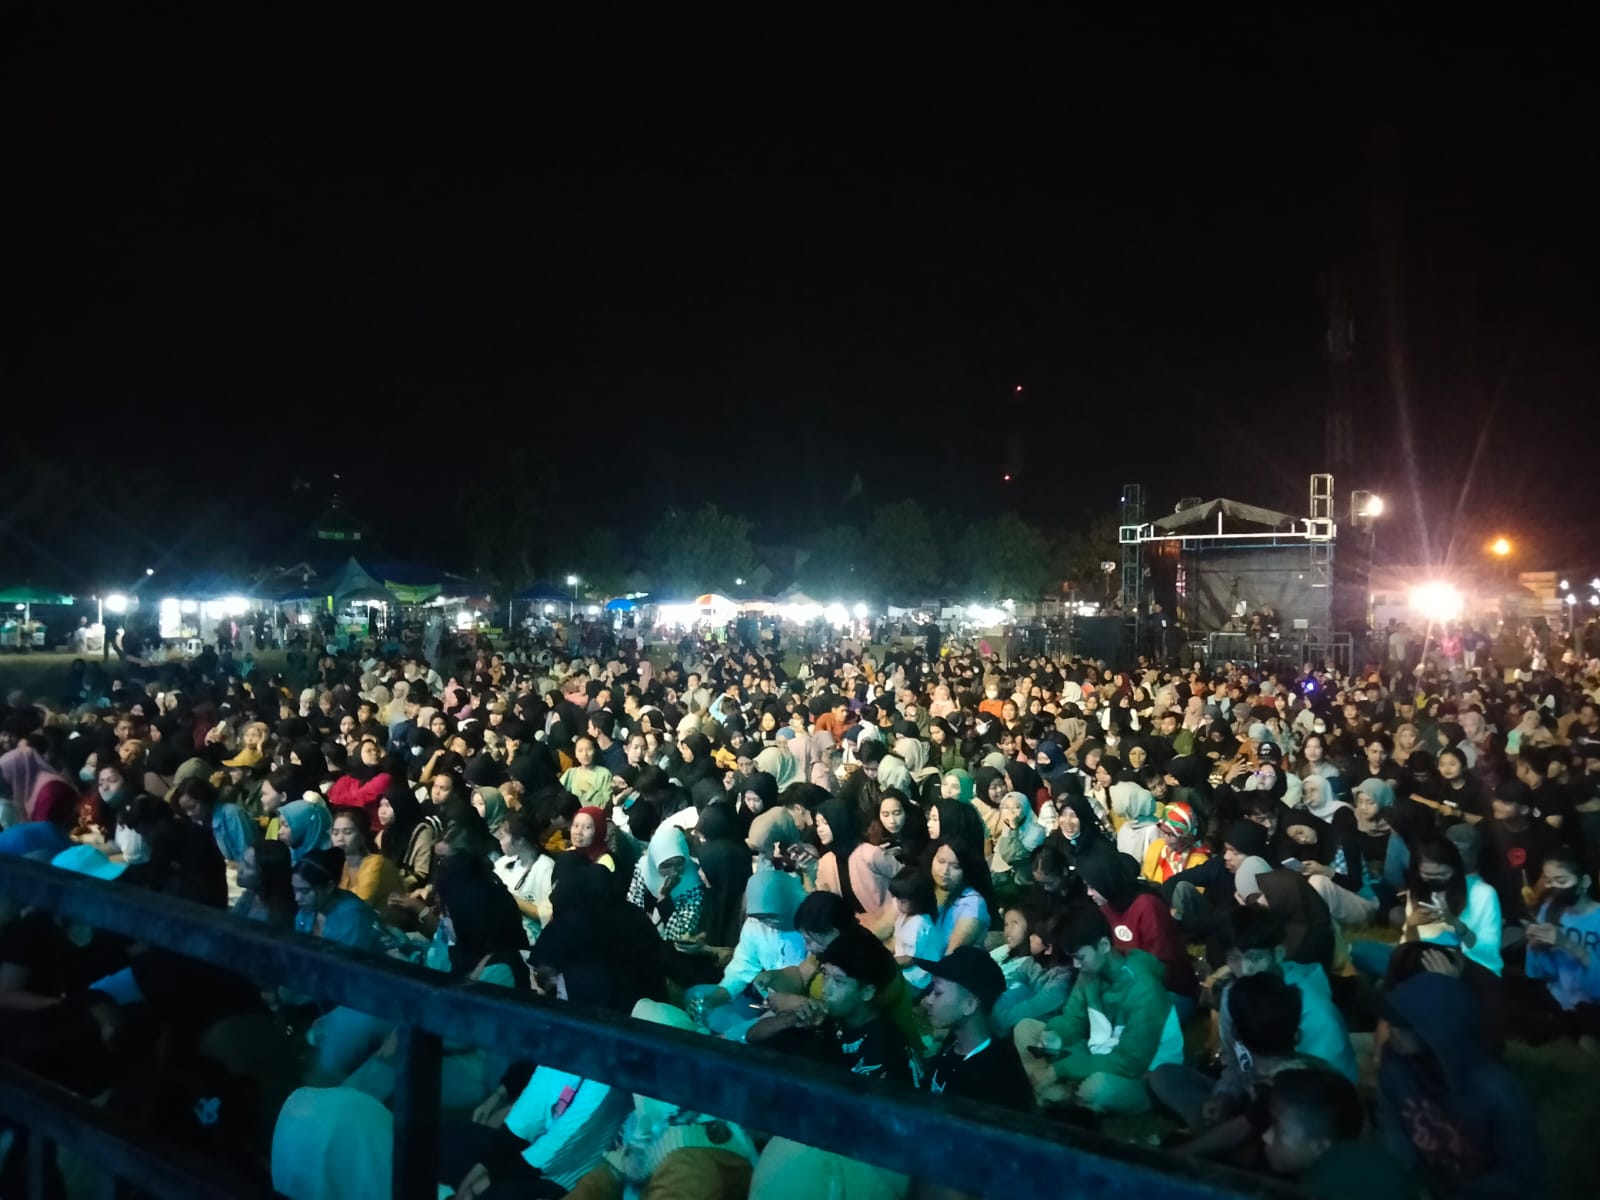 Ribuan Warga Hadiri Talkshow Kominfo di Bantul, Polisi Periksa Barang Bawaan Penonton